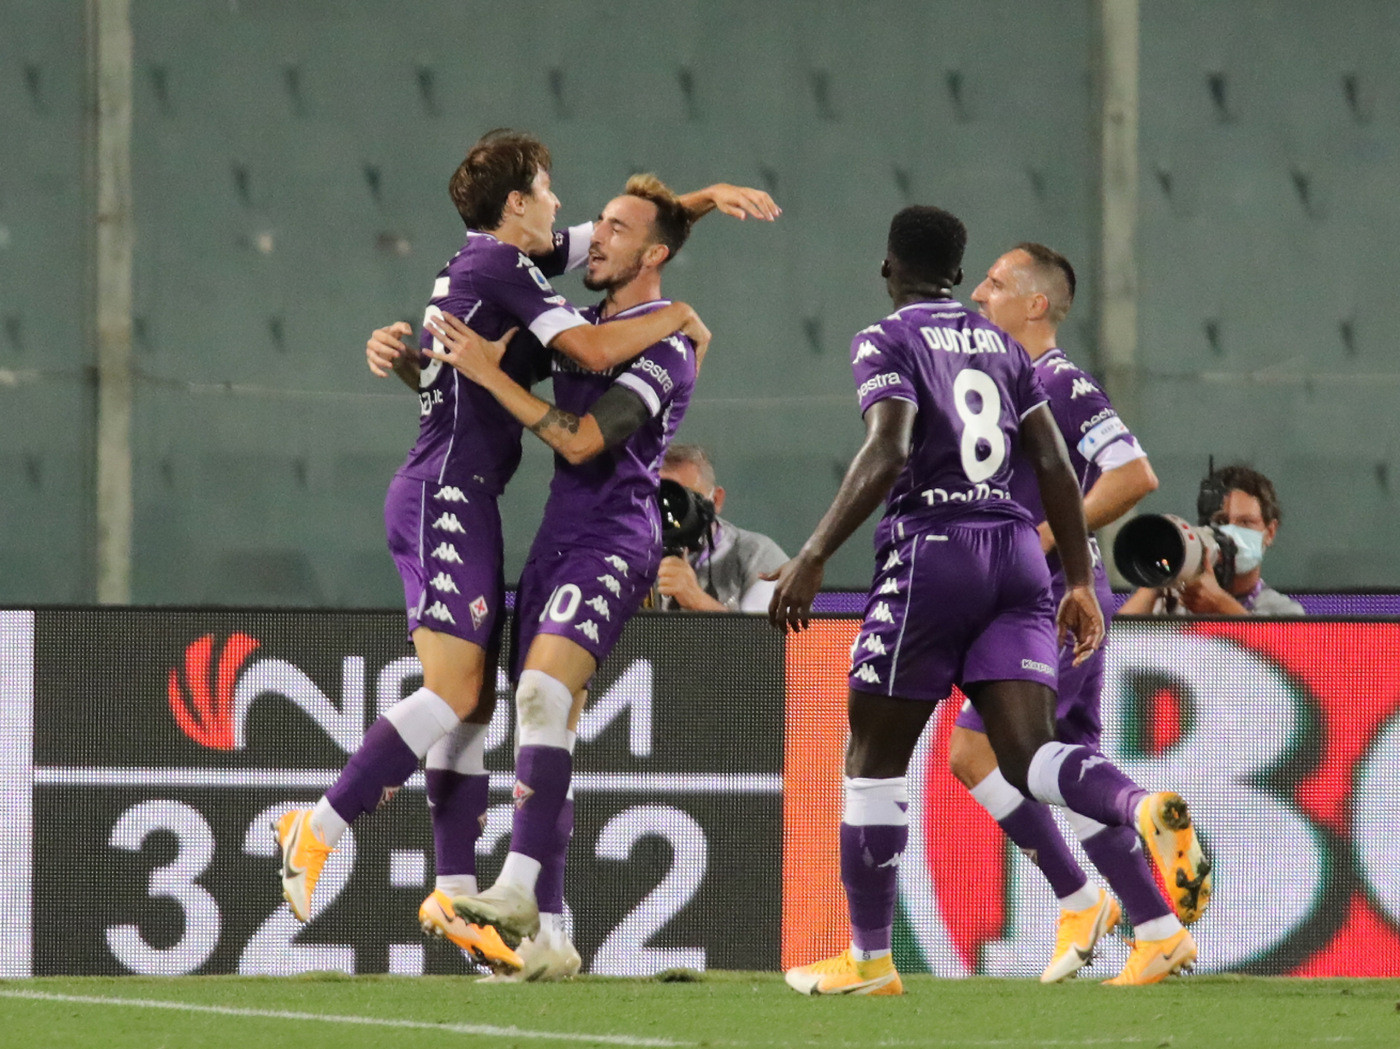 La Fiorentina doma il Toro grazie a una rete di Castrovilli